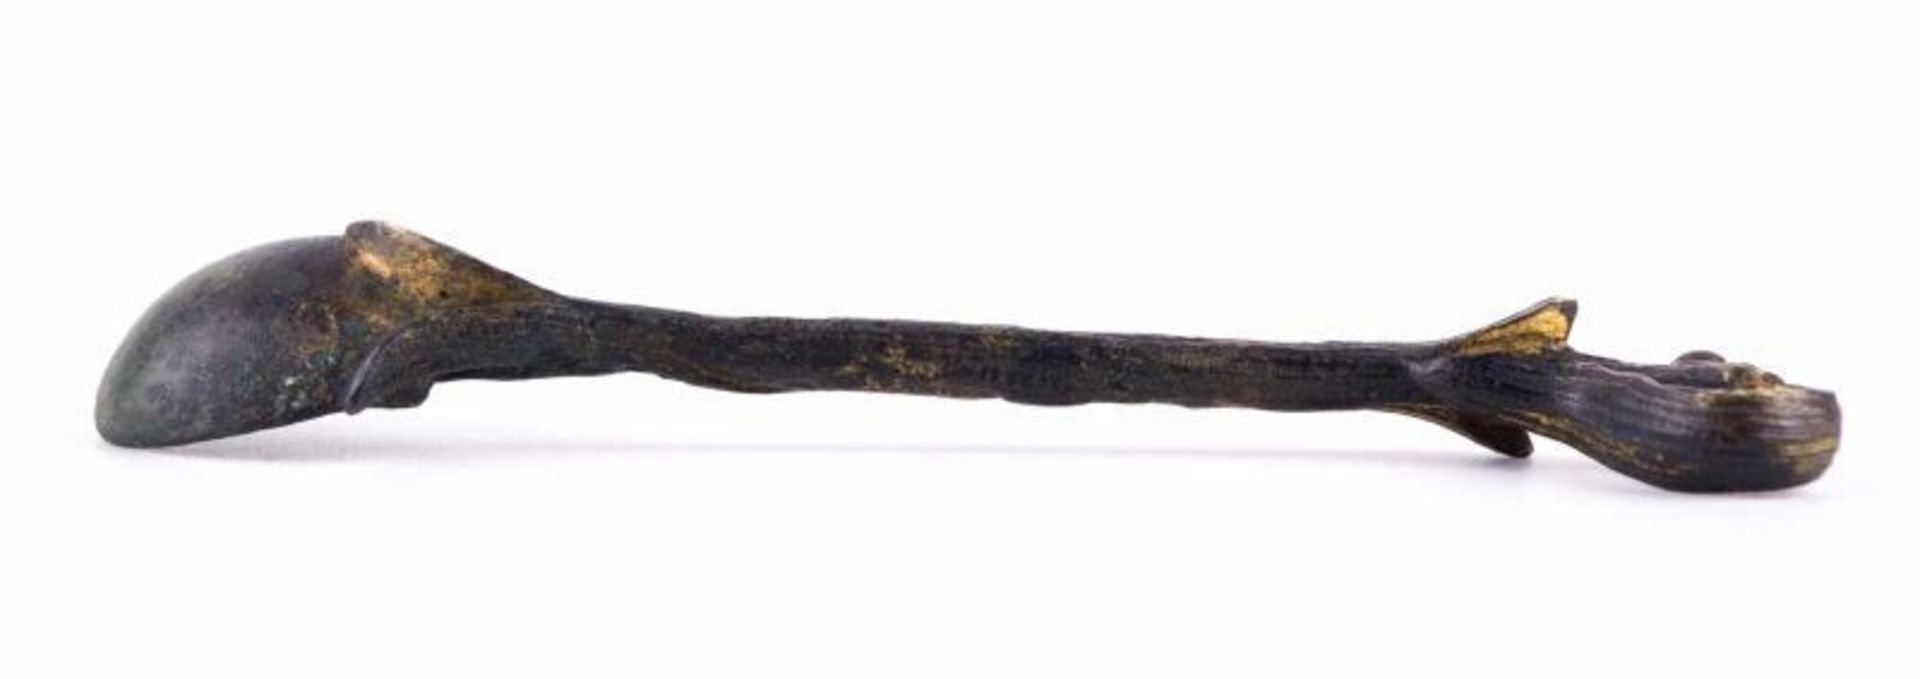 Römischer Salblöffel / Roman salve spoon - ca. 2. Jhd. nach Christus. Schöne [...] - Bild 4 aus 14